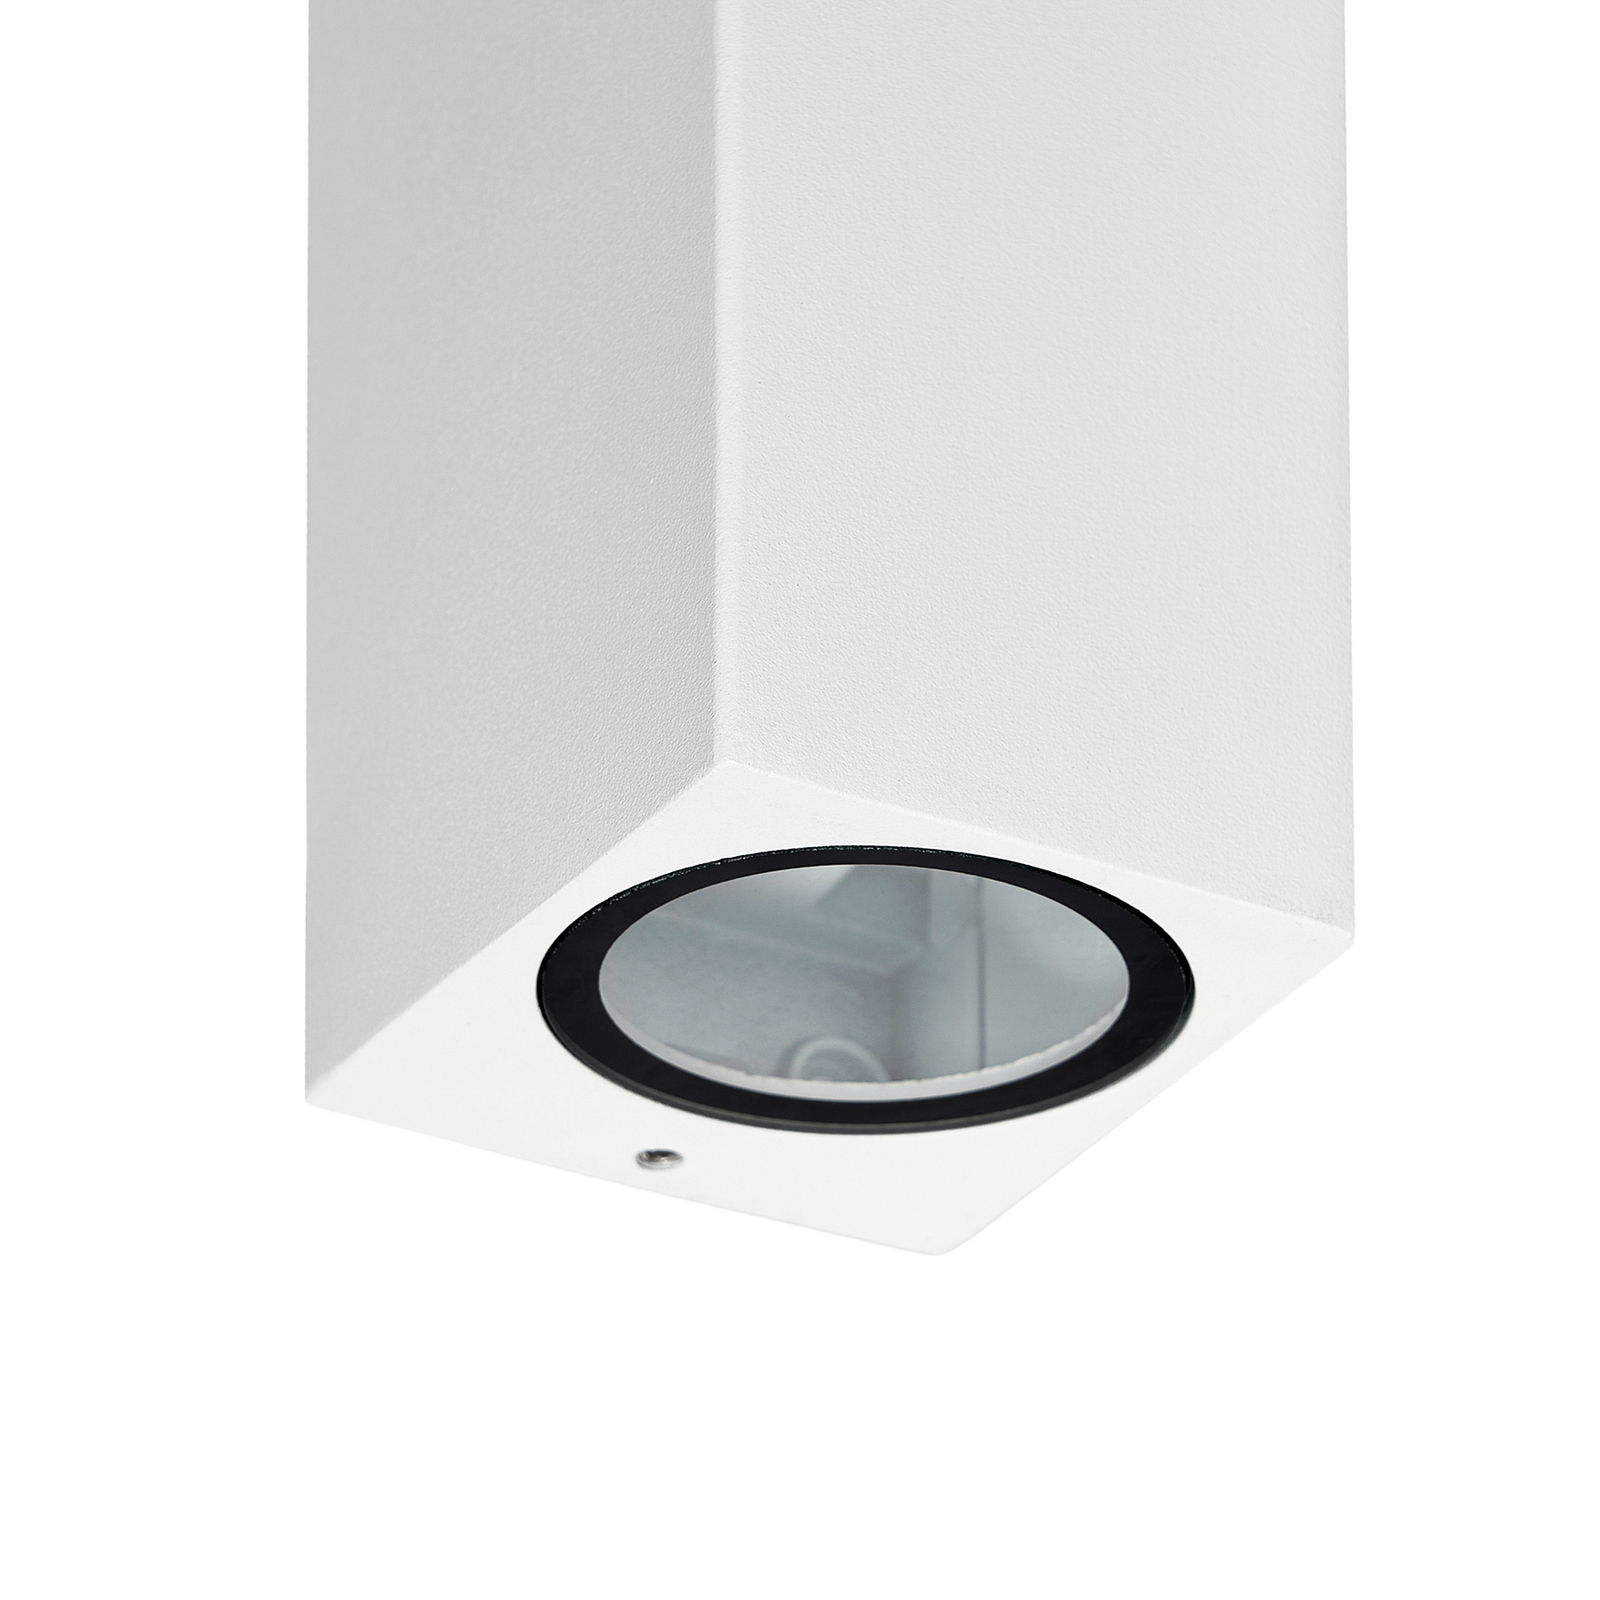 Prios kültéri fali lámpa Tetje, fehér, szögletes, 16 cm, 4 darabos szett